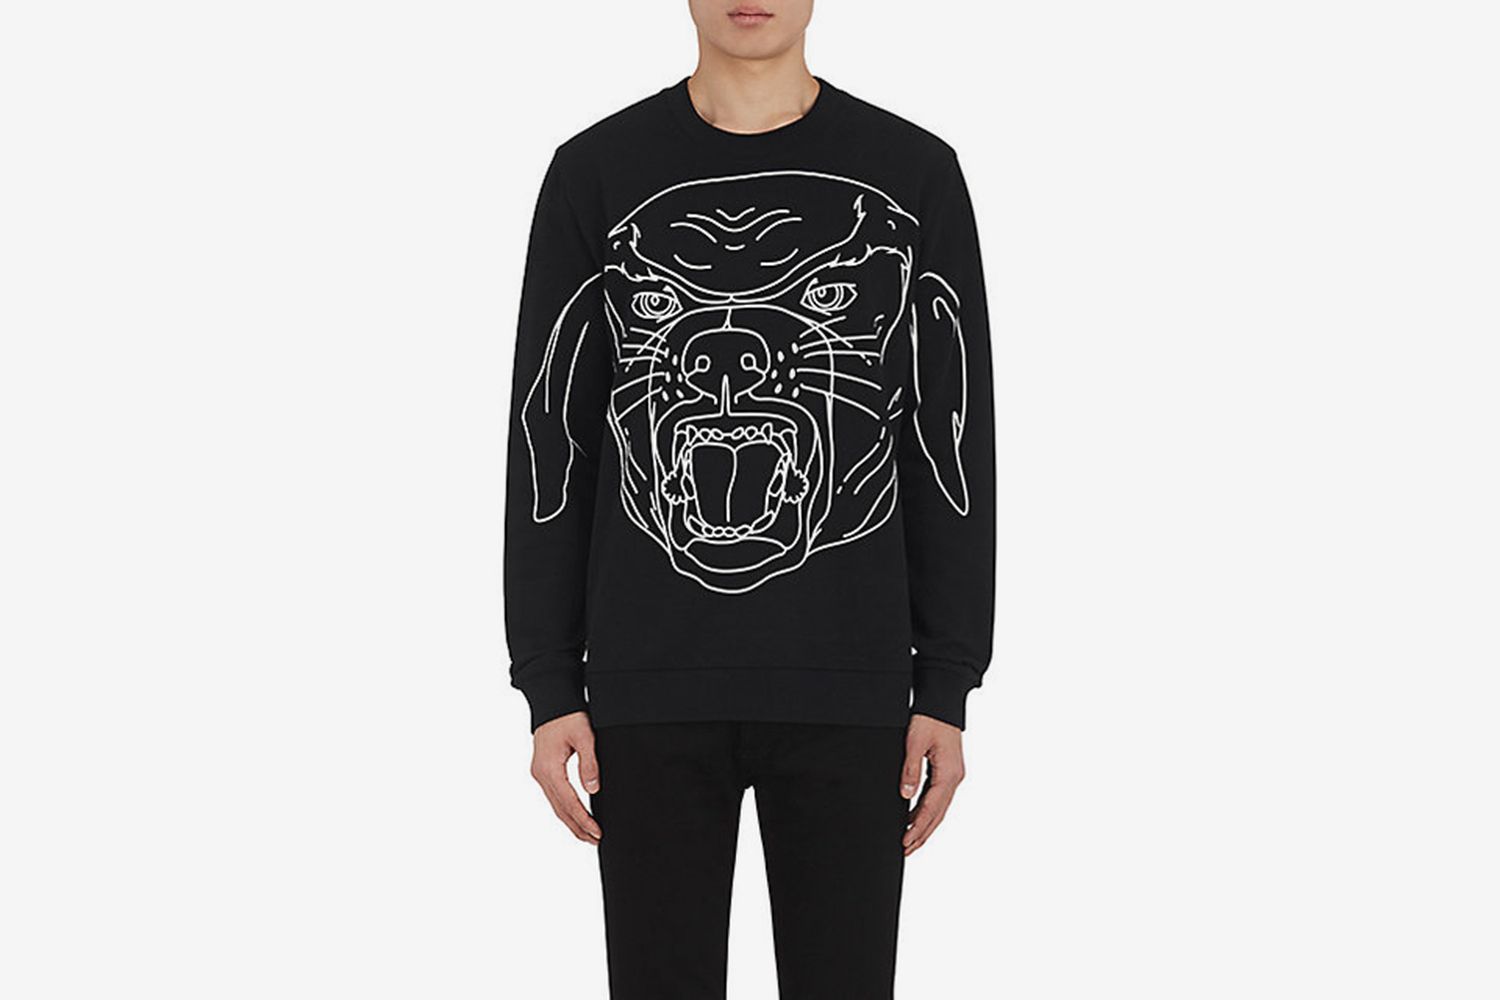 Stenciled-Rottweiler Cotton Sweatshirt